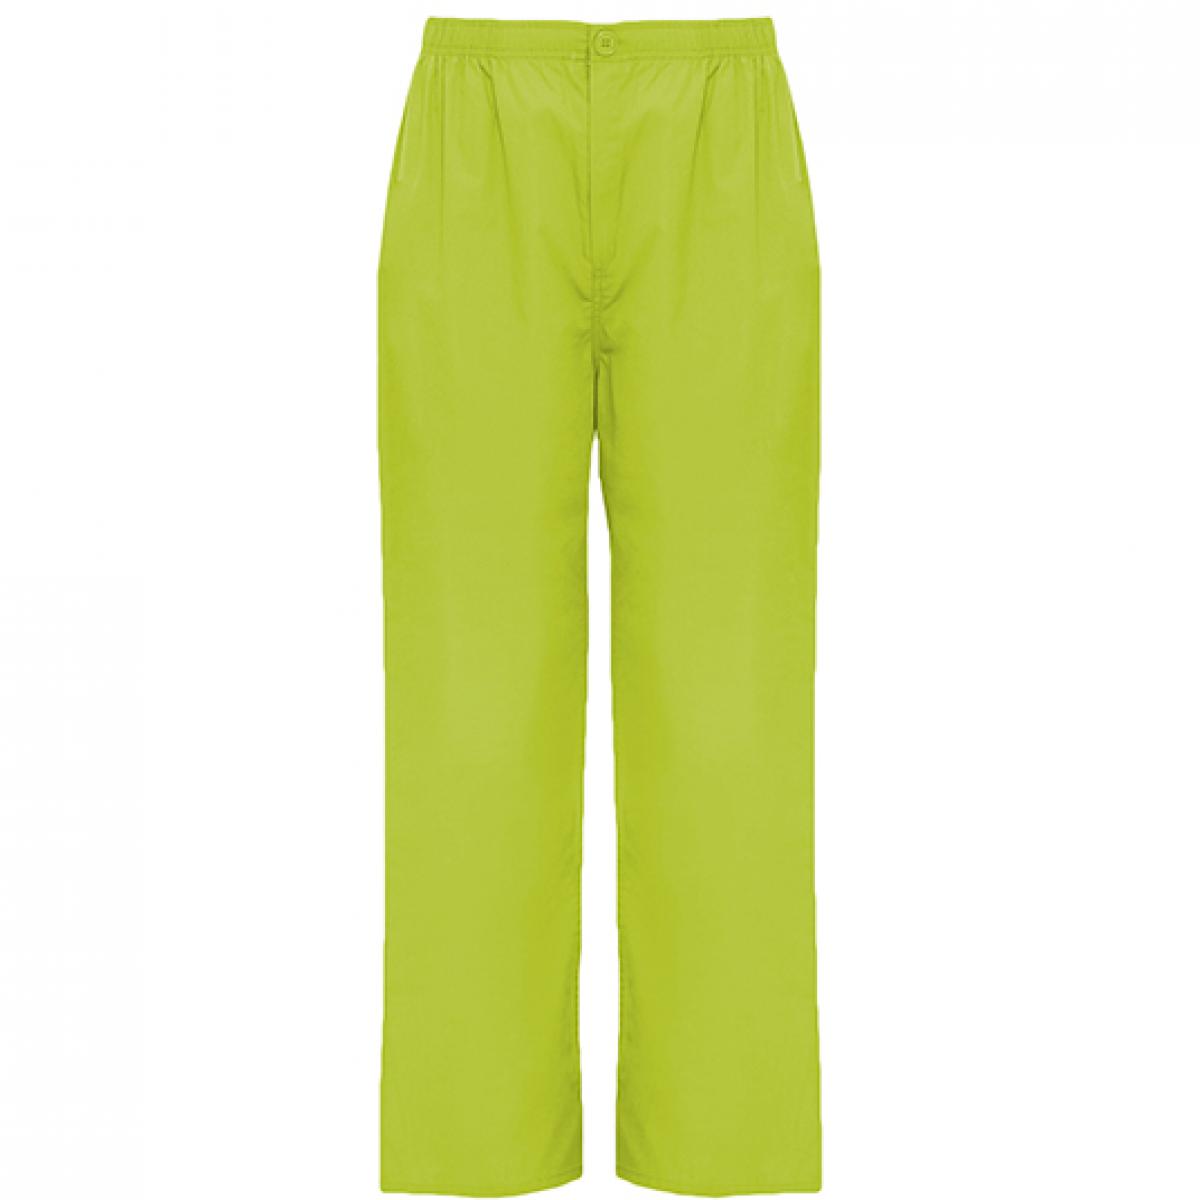 Hersteller: Roly Workwear Herstellernummer: PA9097 Artikelbezeichnung: Vademecum Pull on trousers - Pfegerhose Farbe: Pistachio 28